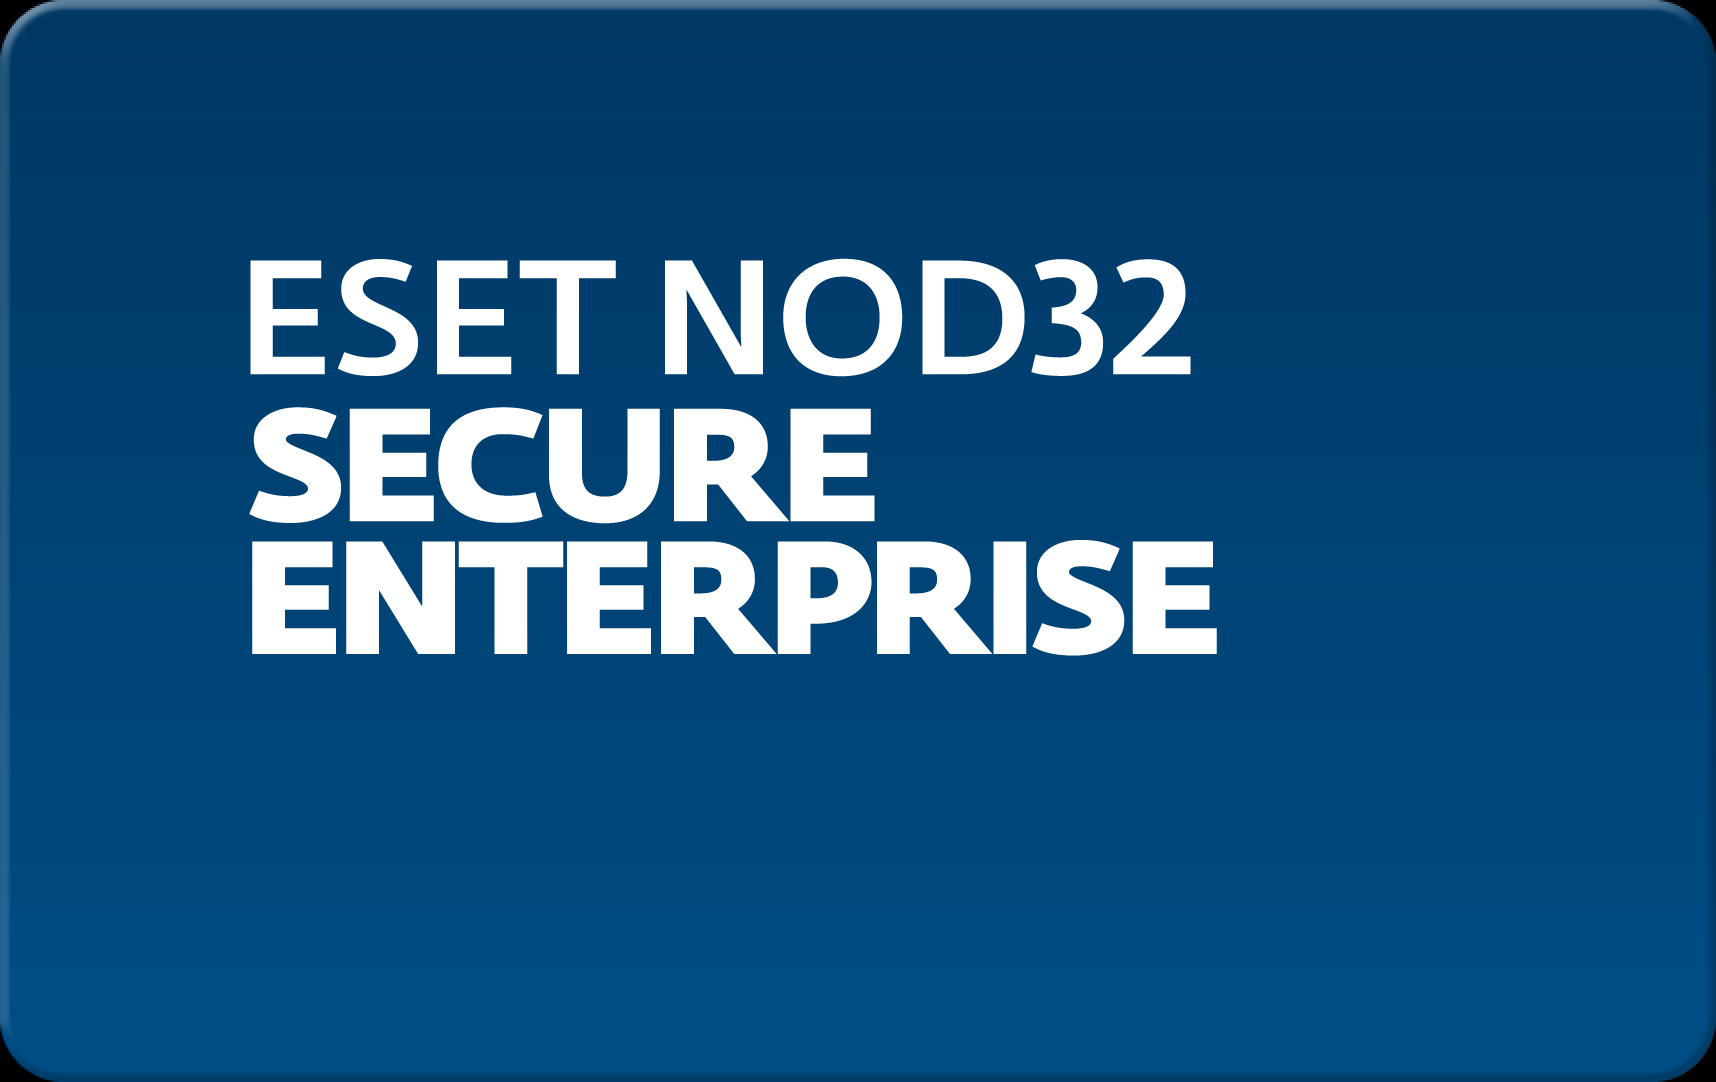        Eset NOD32 Secure Enterprise  162  NOD32-ESE-NS-1-162  #1